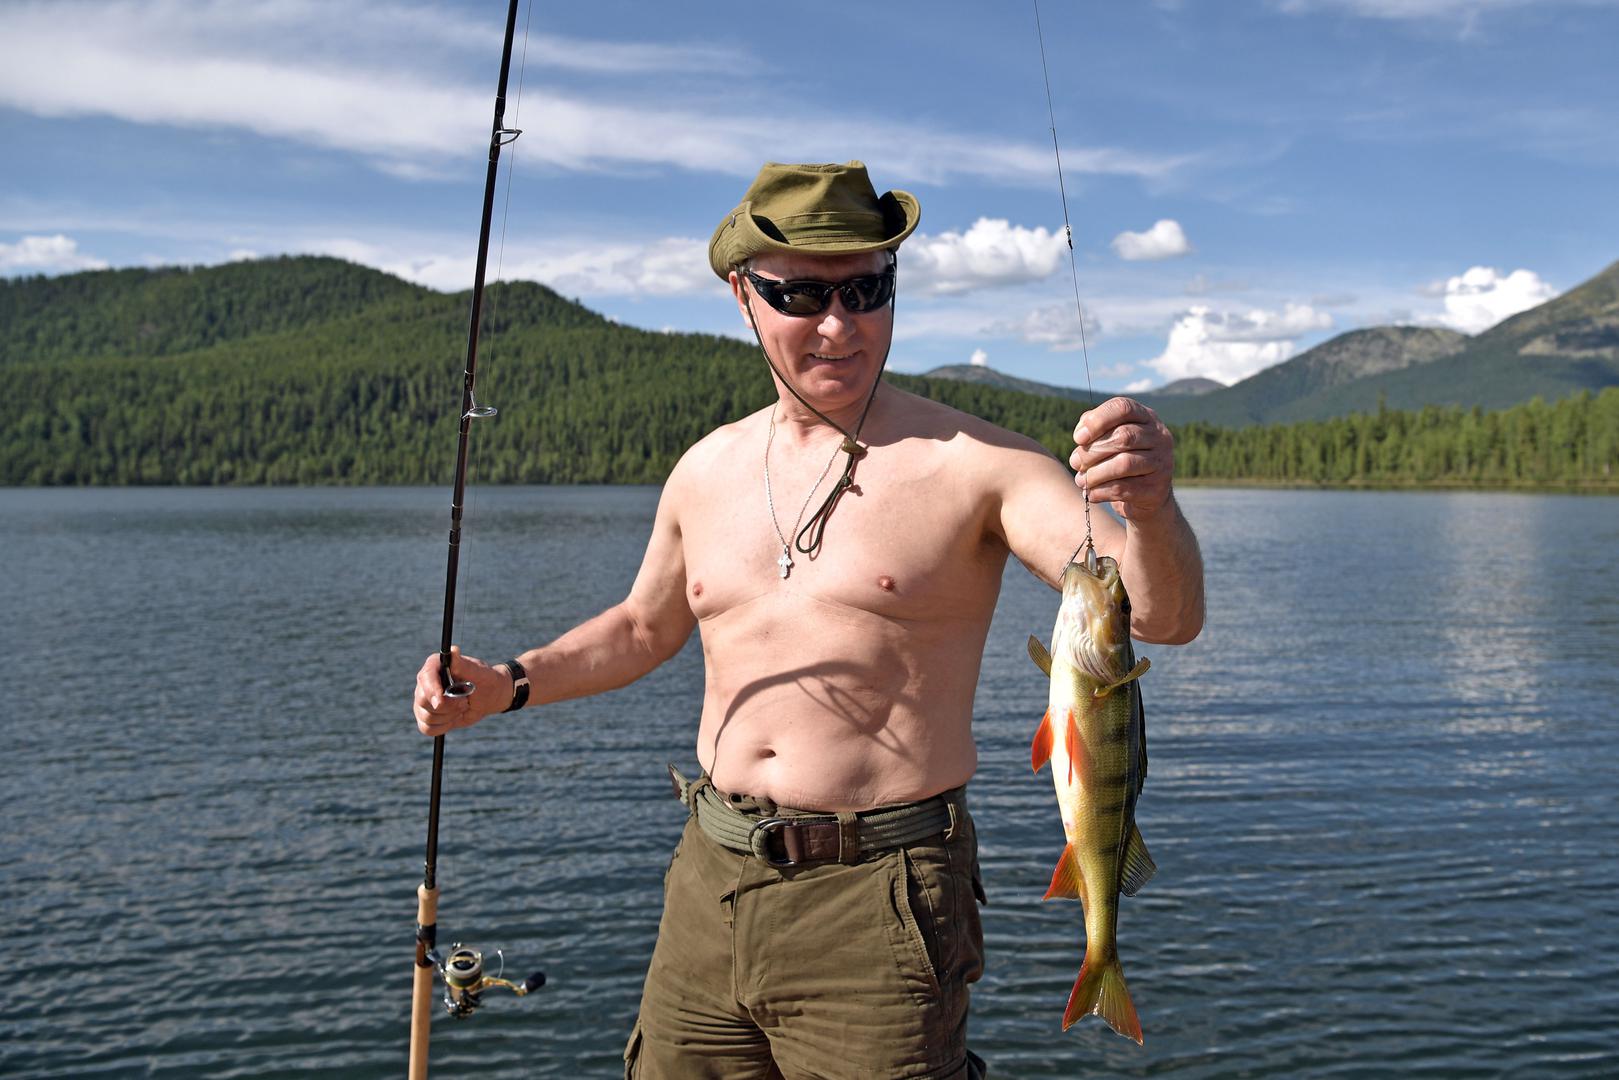 Fotografije i video snimke koje je objavio Kremlj u subotu prikazuju Putina, koji je majstor u borilačkim vještinama i igra hokej na ledu, kako lovi ribu, pliva i sunča se...